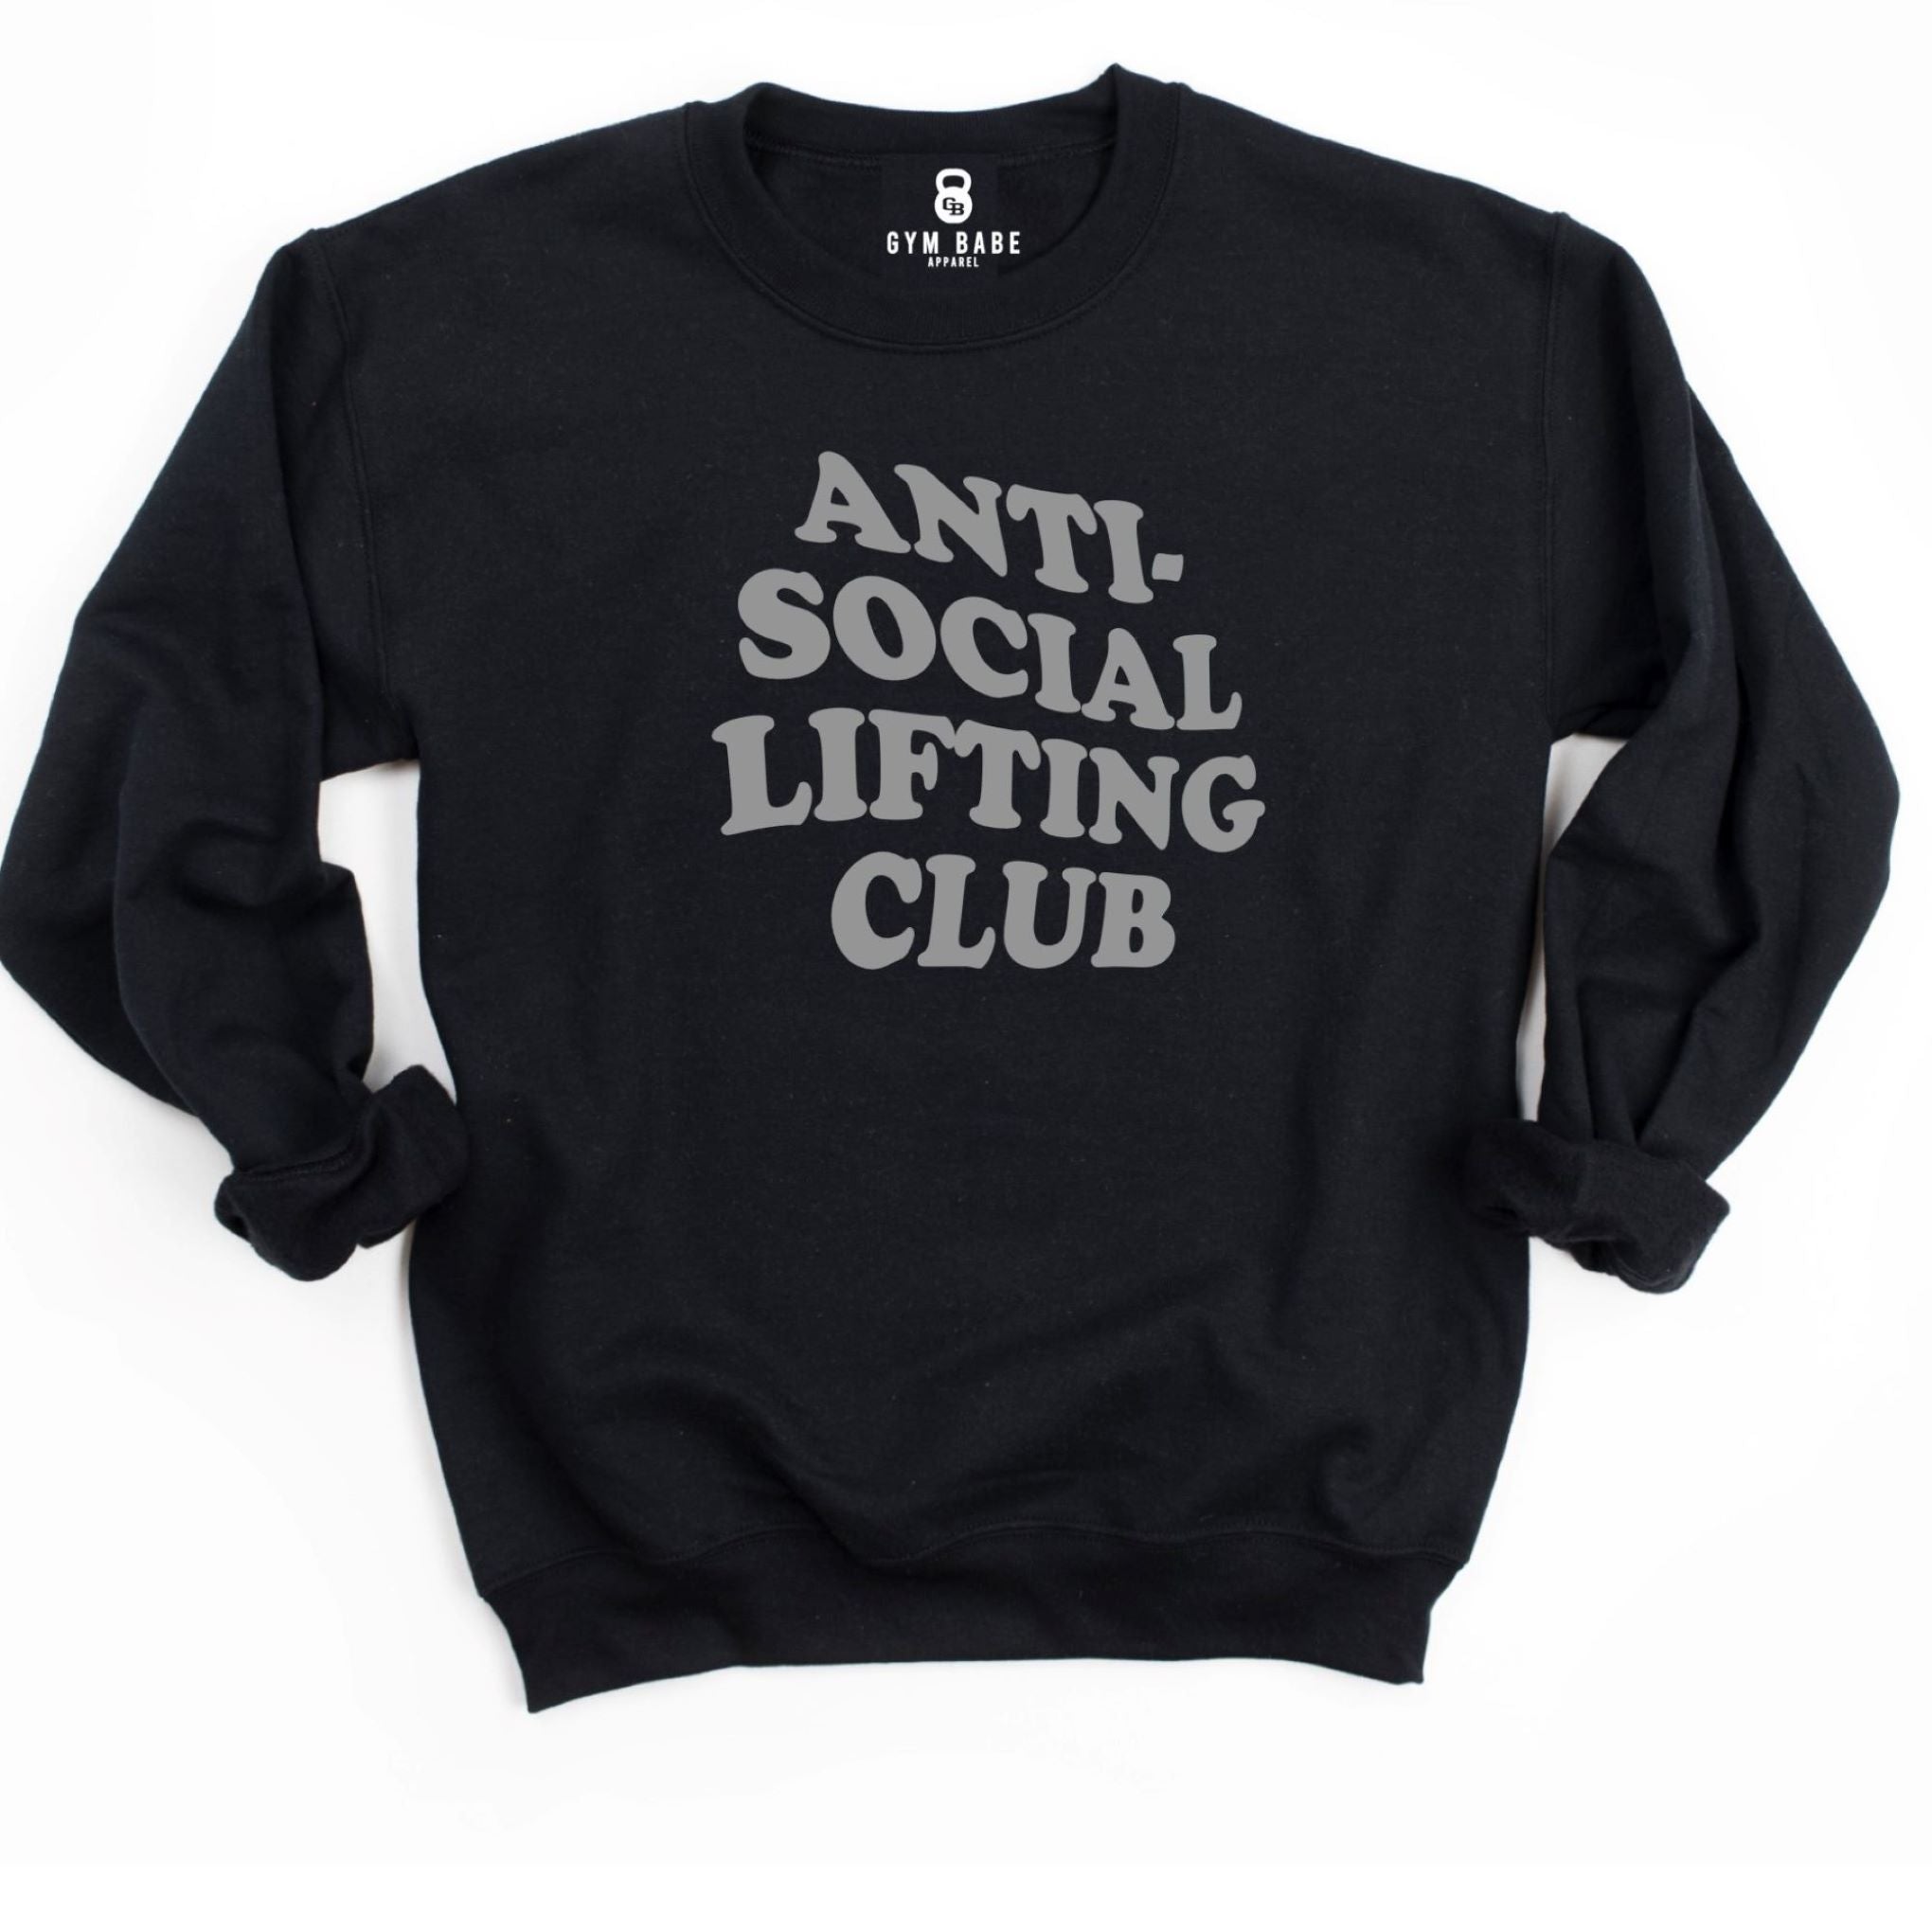 Anti Social Lifting Club Sweatshirt, gb clube 